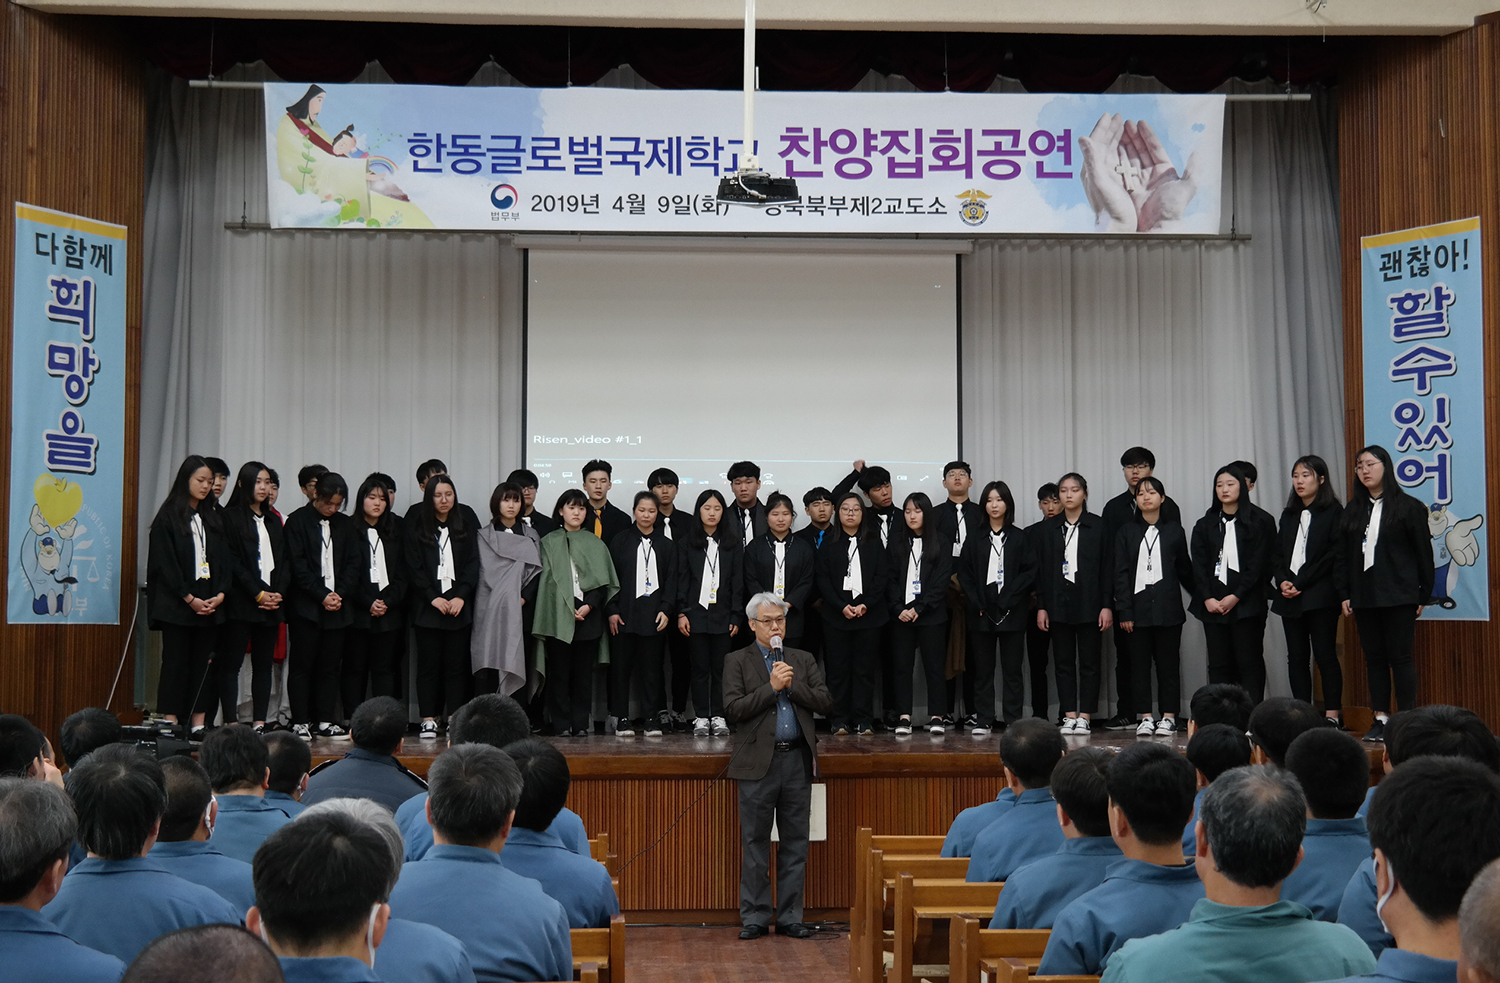 한동글로벌국제학교 학생들이 경북 제2교도소에서 뮤지컬 공연을 펼치고 있다..jpeg